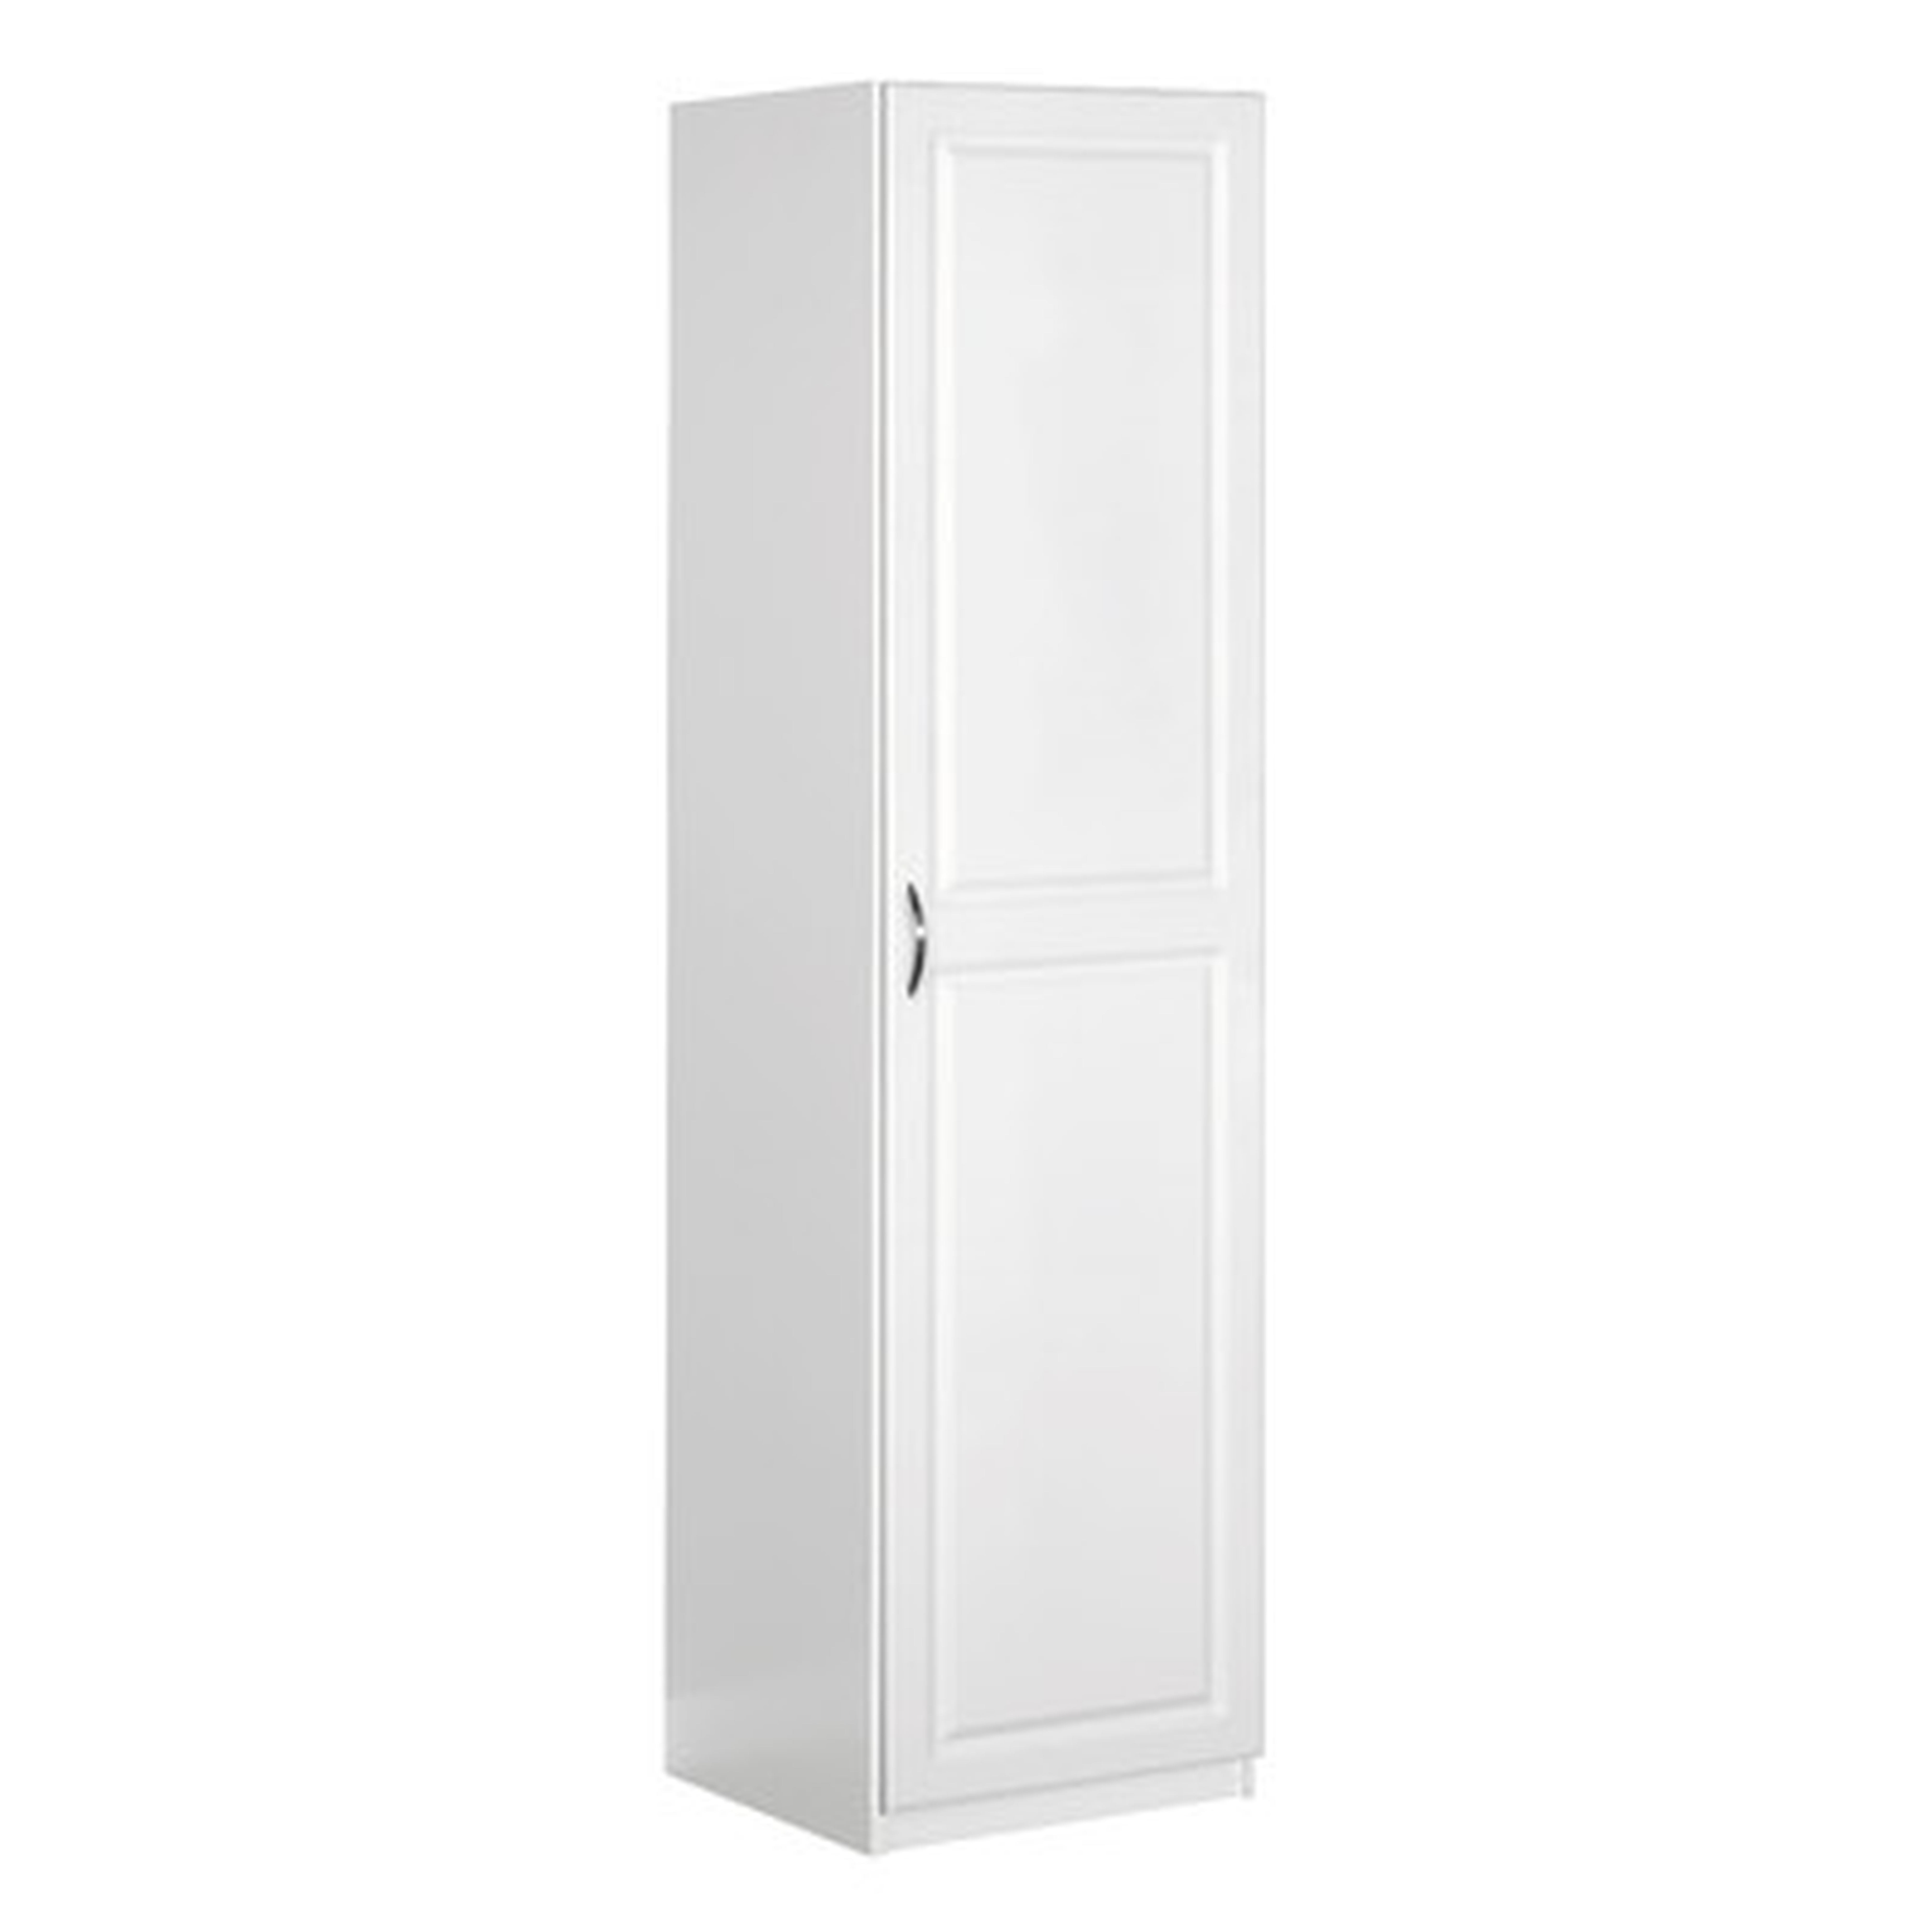 Dimensions 71.73" H x 17.99" W x 18.12" D Single Door Storage Cabinet - Wayfair